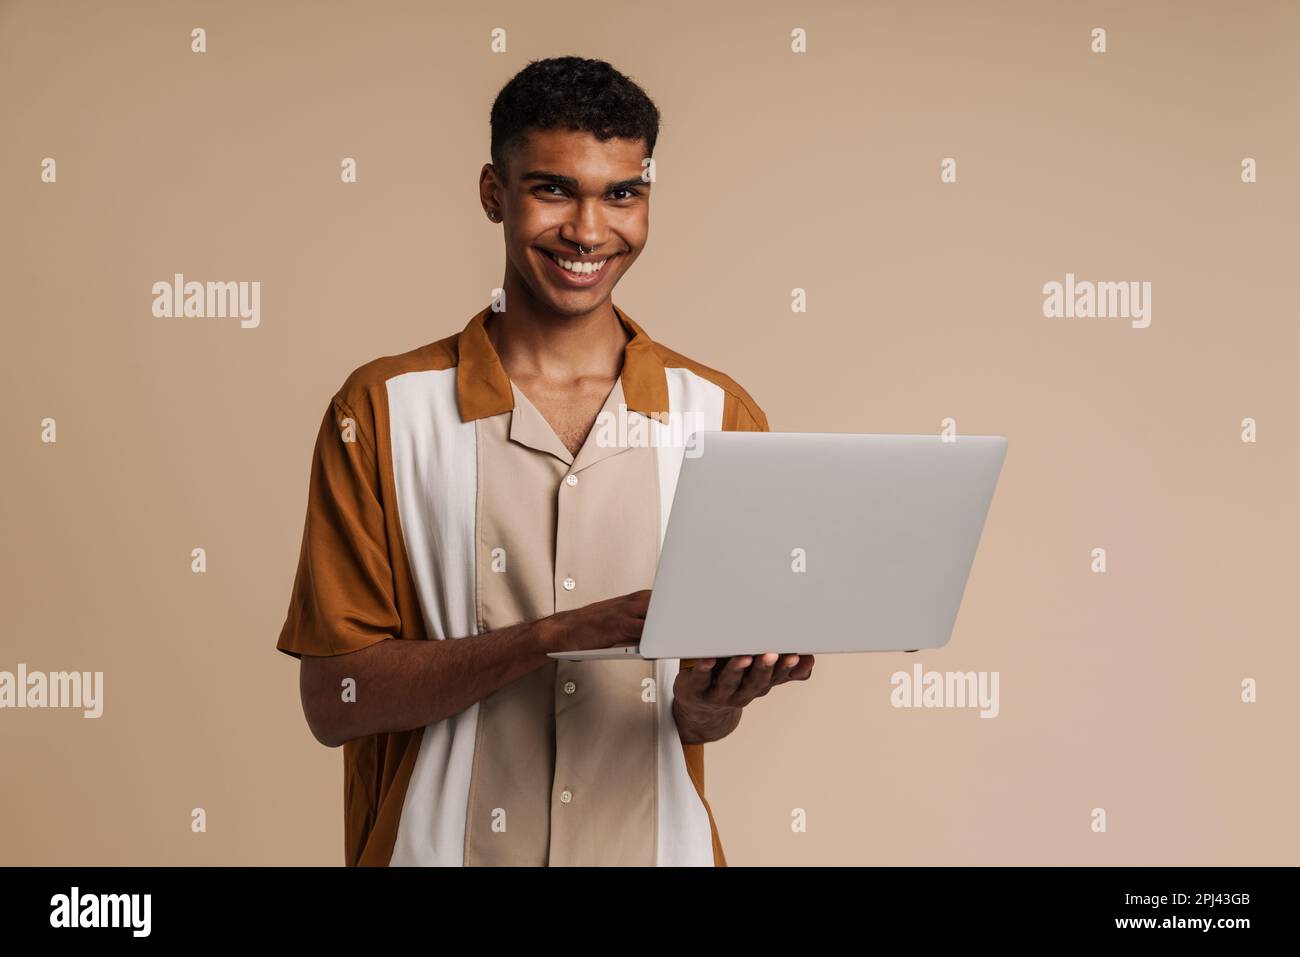 Ein junger, gut aussehender afrikaner mit einem durchdringenden Laptop und Blick in die Kamera, während er über einem isolierten beigen Hintergrund stand Stockfoto